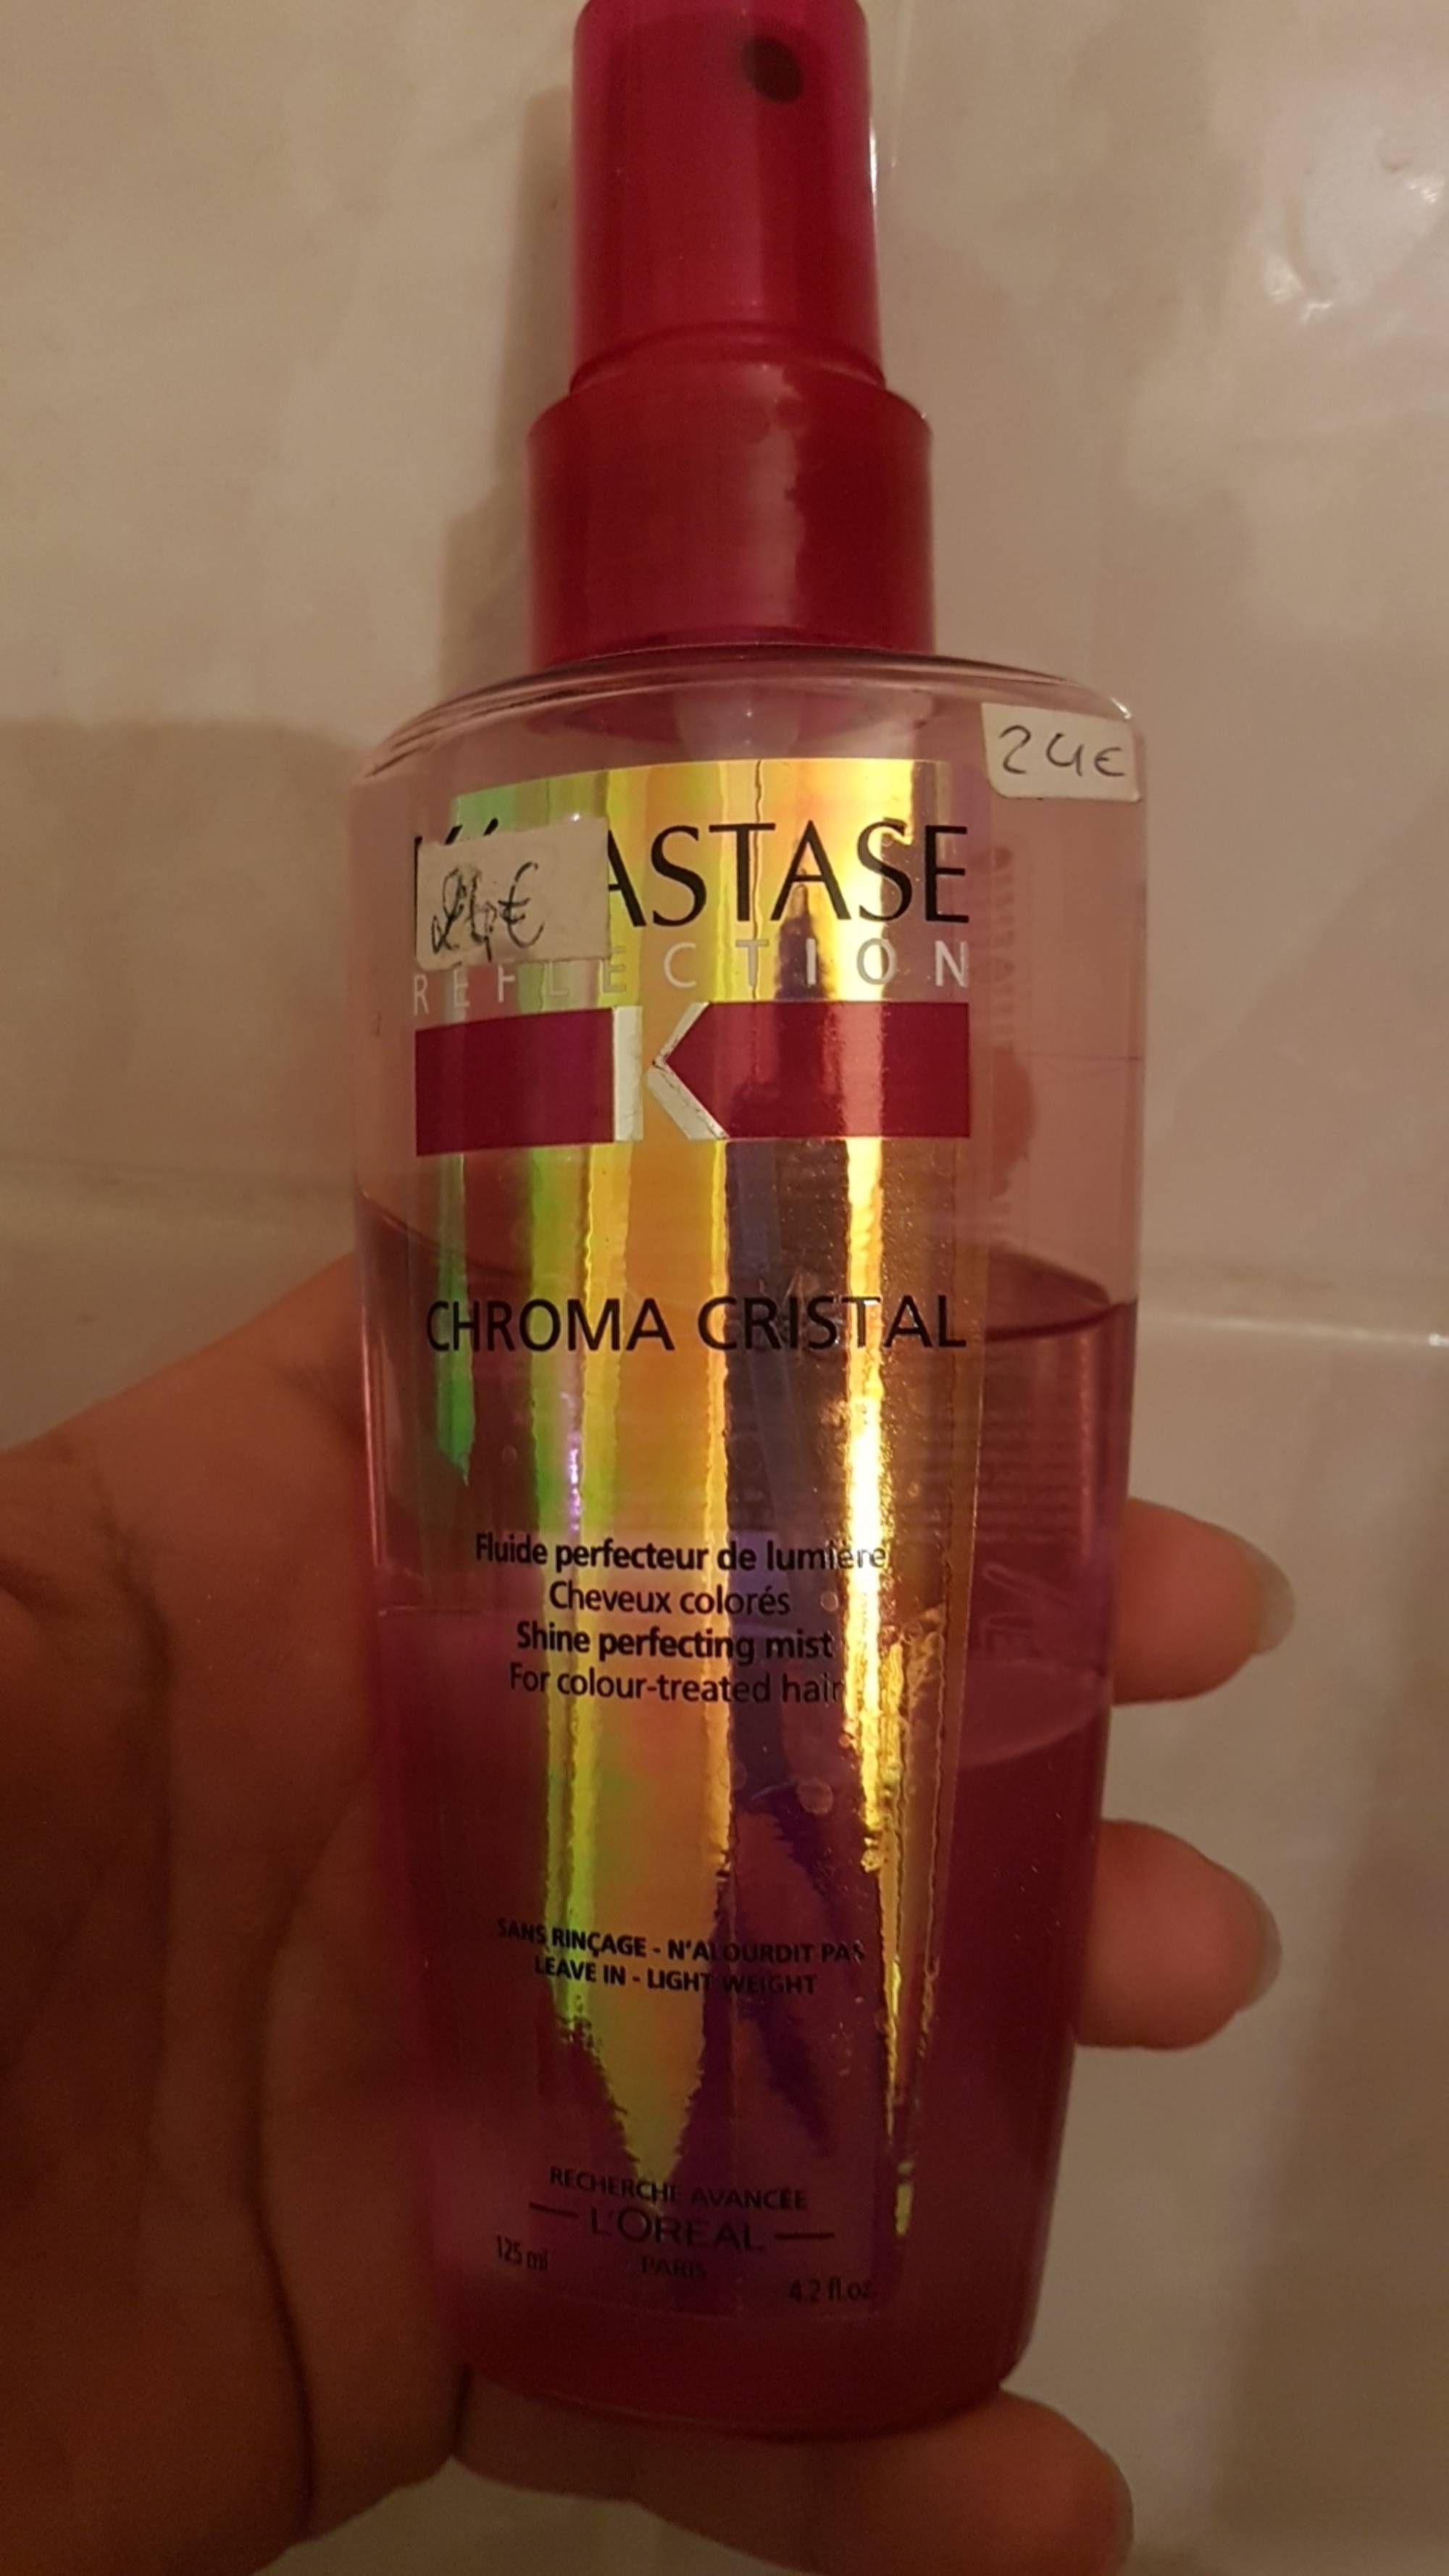 L'ORÉAL - Kérastase - Chroma cristal - Fluide perfecteur de lumière - Cheveux colorés